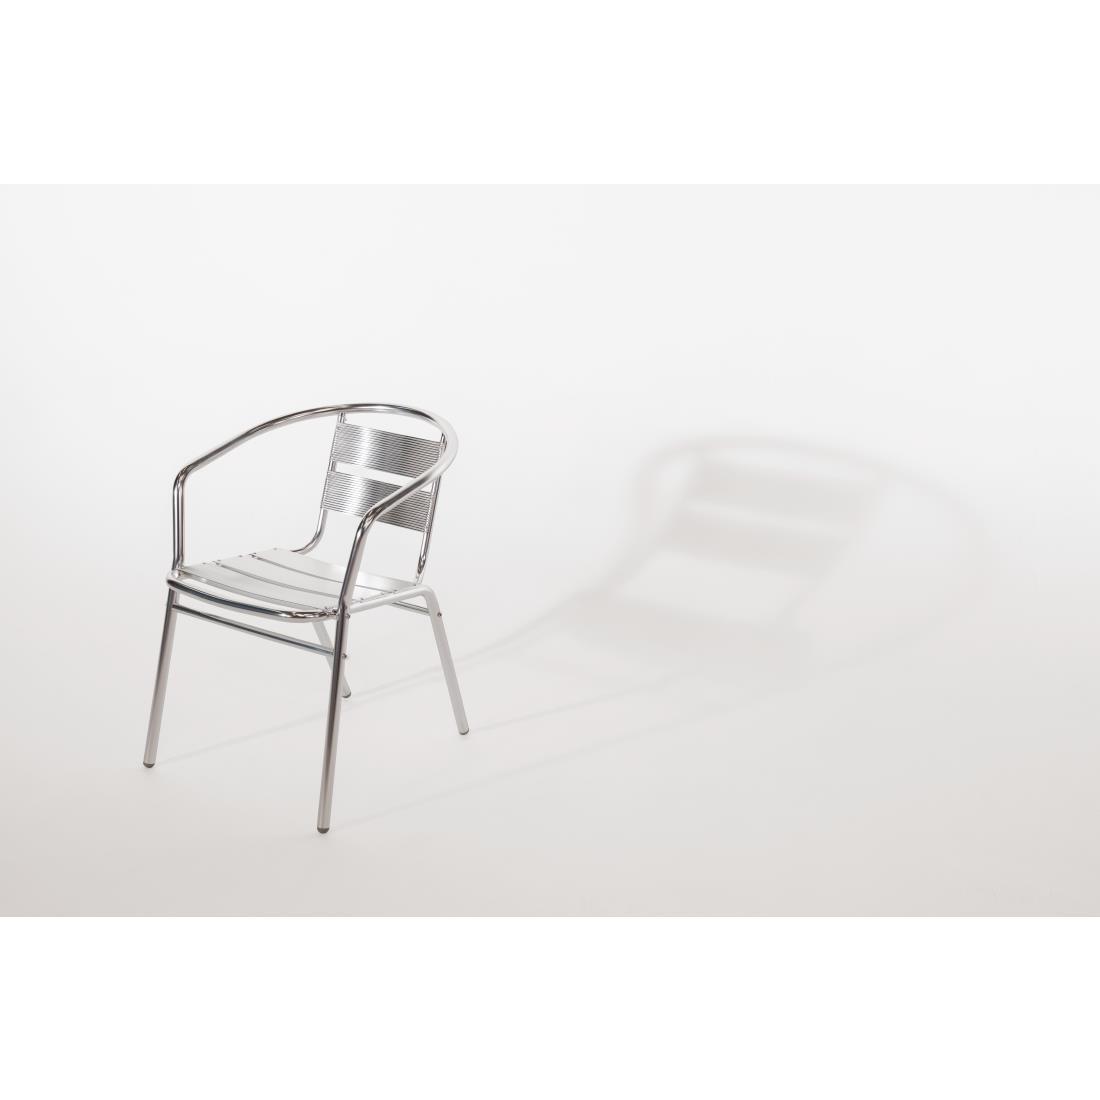 Bolero Aluminium Stacking Chairs (Pack of 4) - U419  - 7